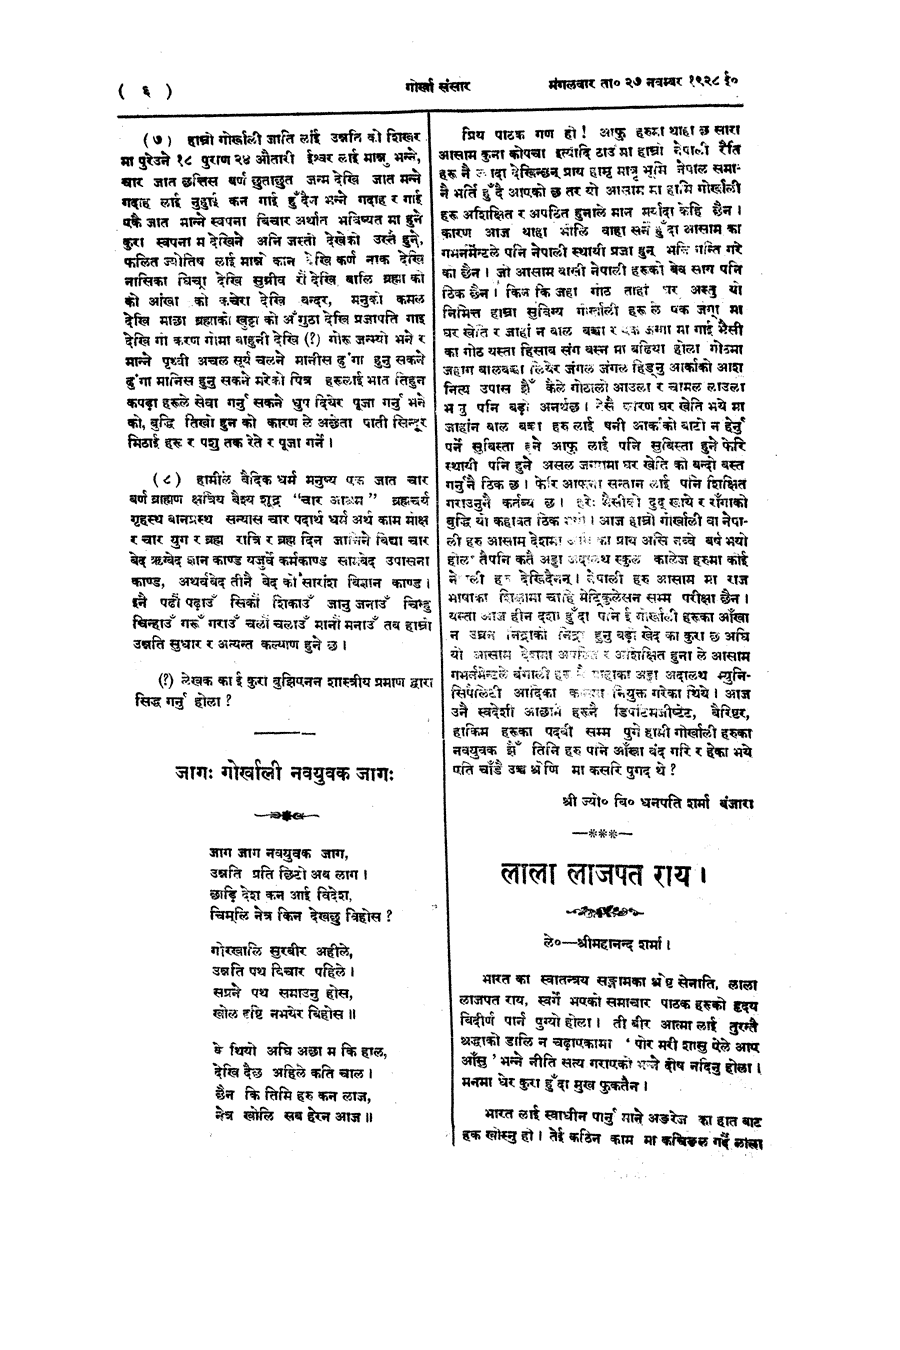 Gorkha Sansar, 27 Nov 1928, page 6